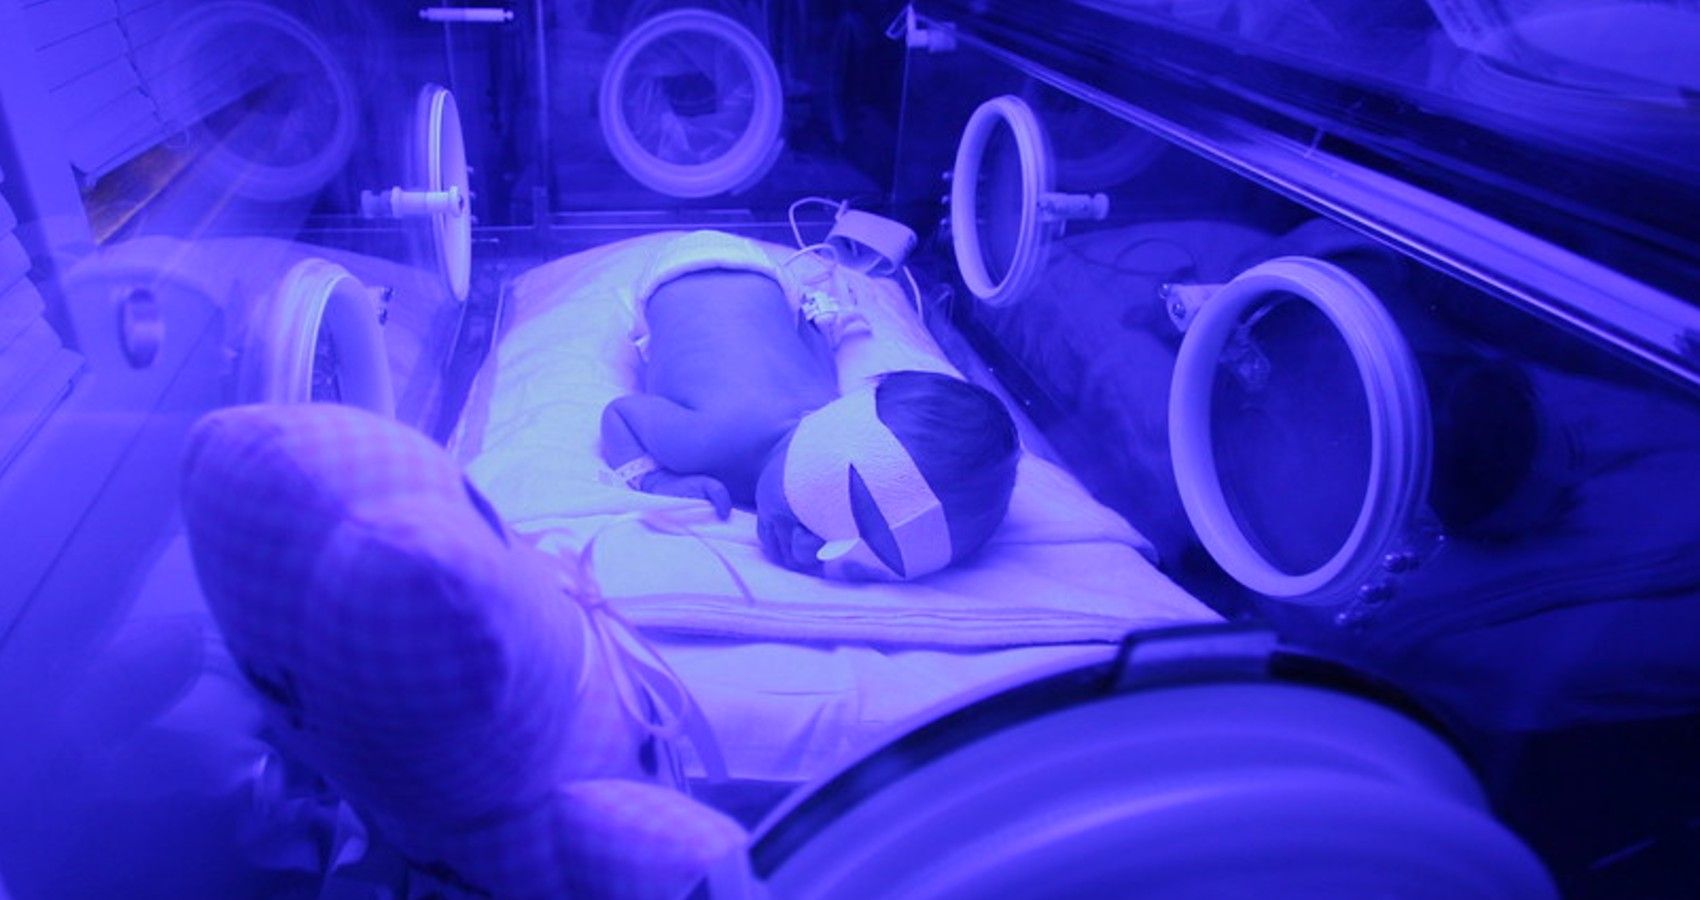 A newborn in the NICU for jaundice treatment